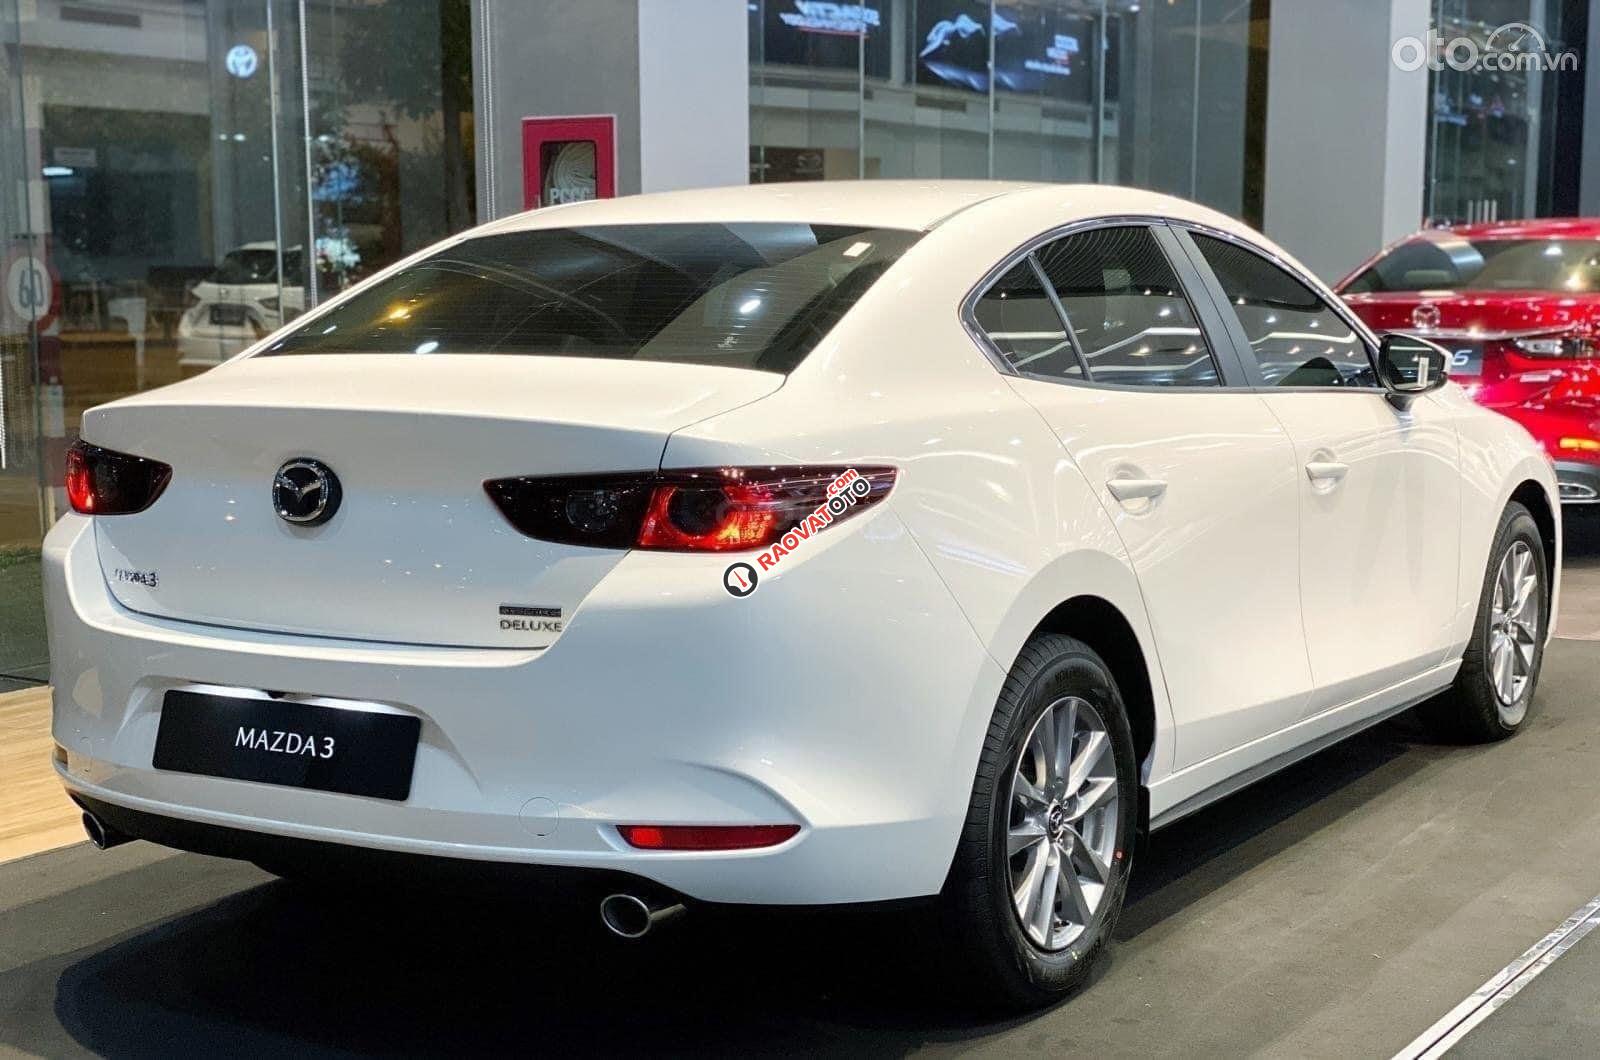 [Mazda Quảng Ngãi] bán Mazda 3 năm sản xuất 2022, giảm lên đến 25tr tiền mặt cùng 1 năm bảo hiểm thân vỏ-1